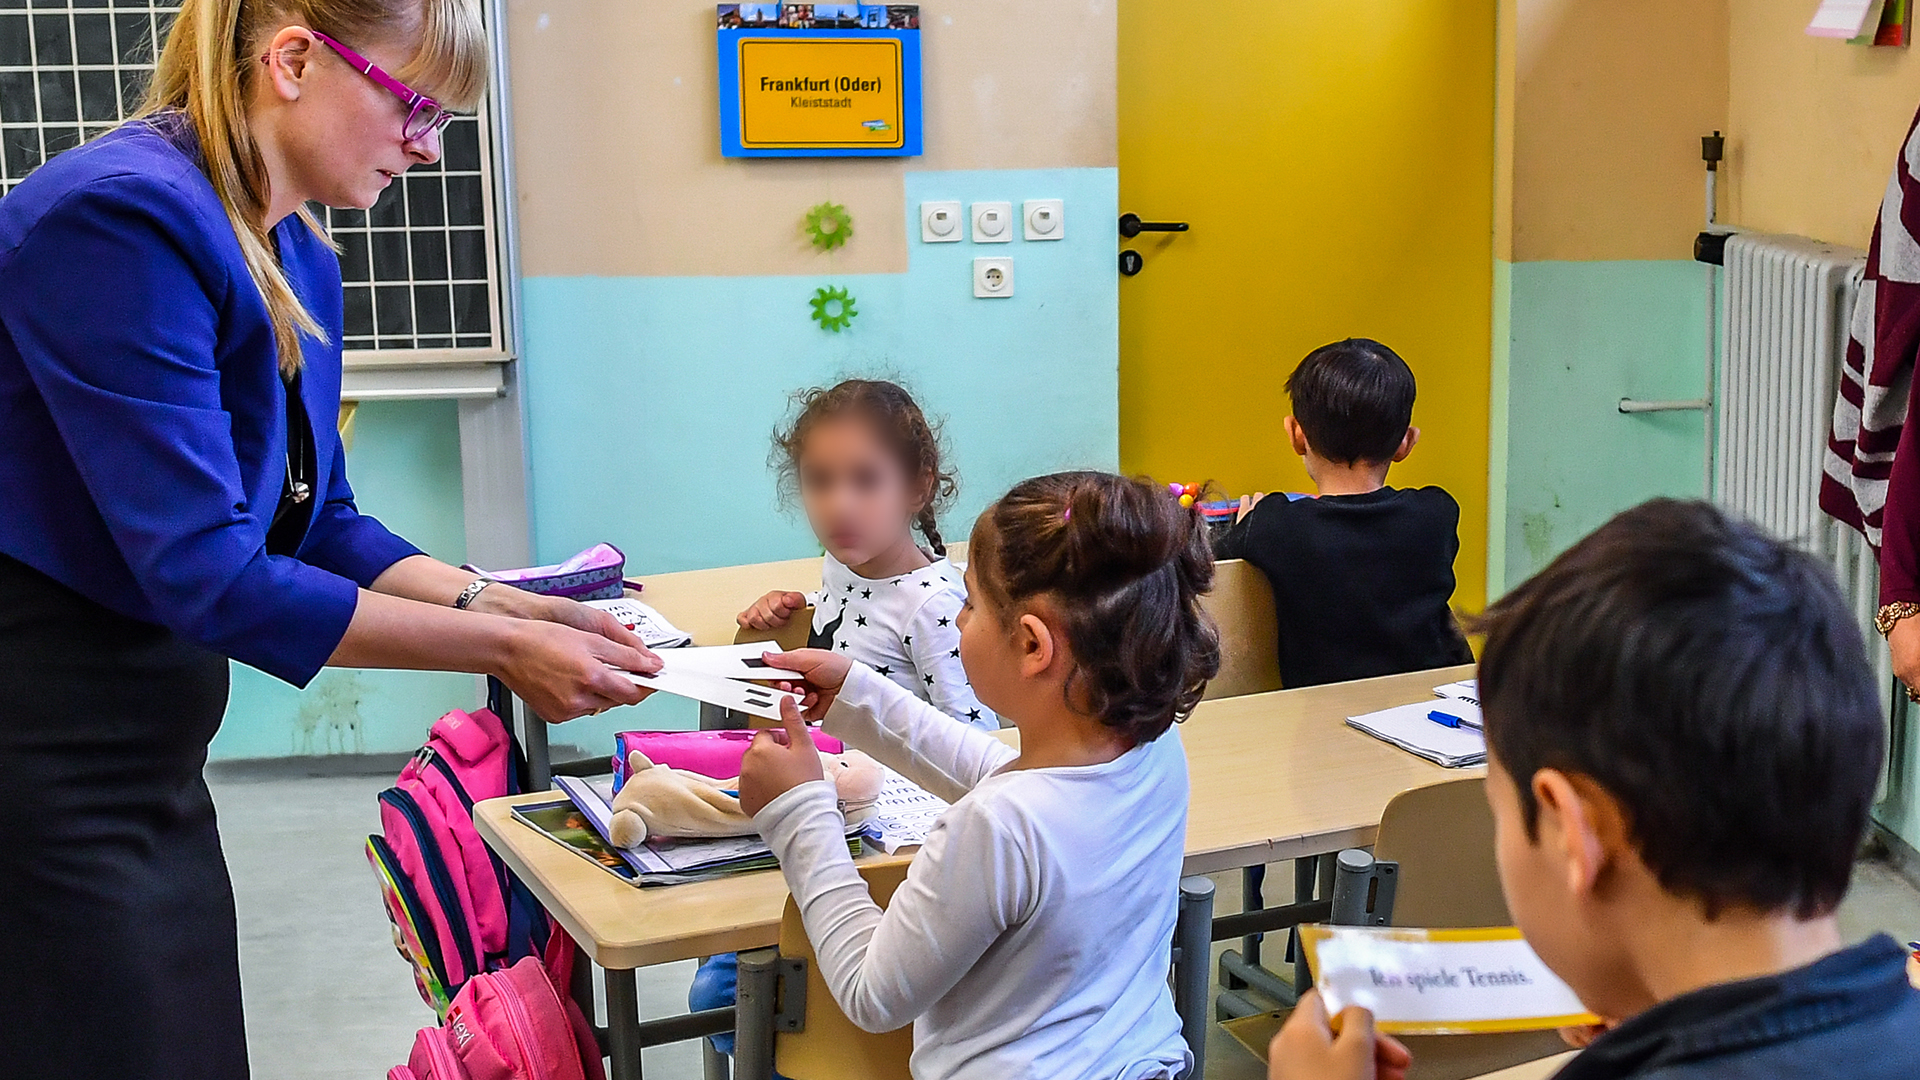 Flüchtlingskinder im Unterricht in einer Schule in Frankfurt/Oder (Archivbild) | picture alliance / Patrick Pleul